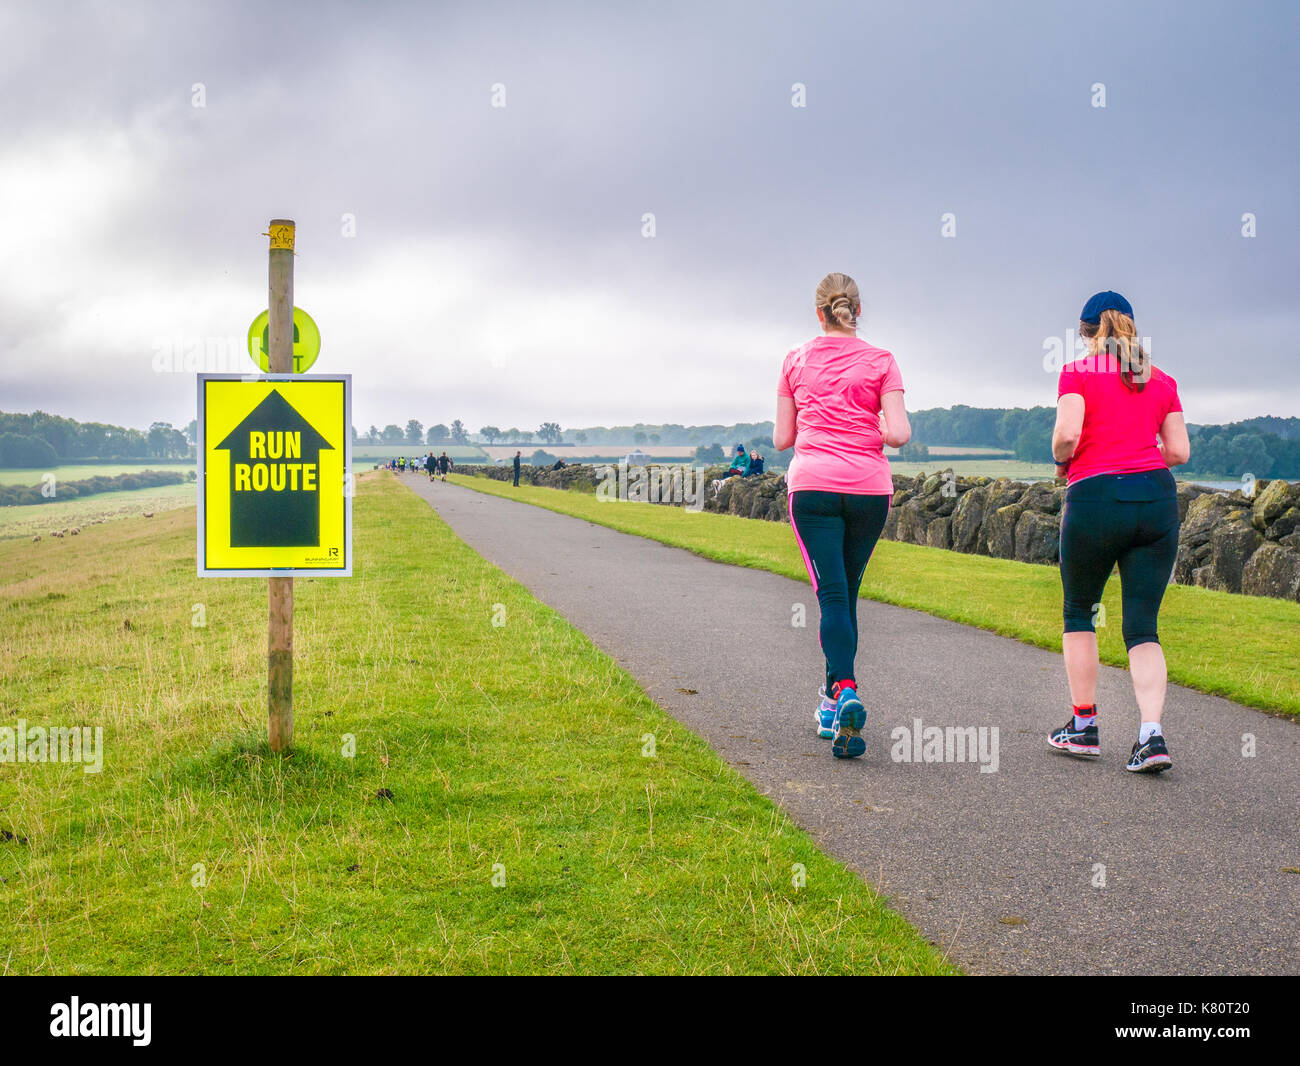 Bringen Sie den hinteren, der letzte Läufer auf dem Weg über den Damm zu Beginn der Rutland Marathon und Halbmarathon Rennen in Rutland Water Reservoir, England, am Sonntag, den 17. September 2017 Stockfoto